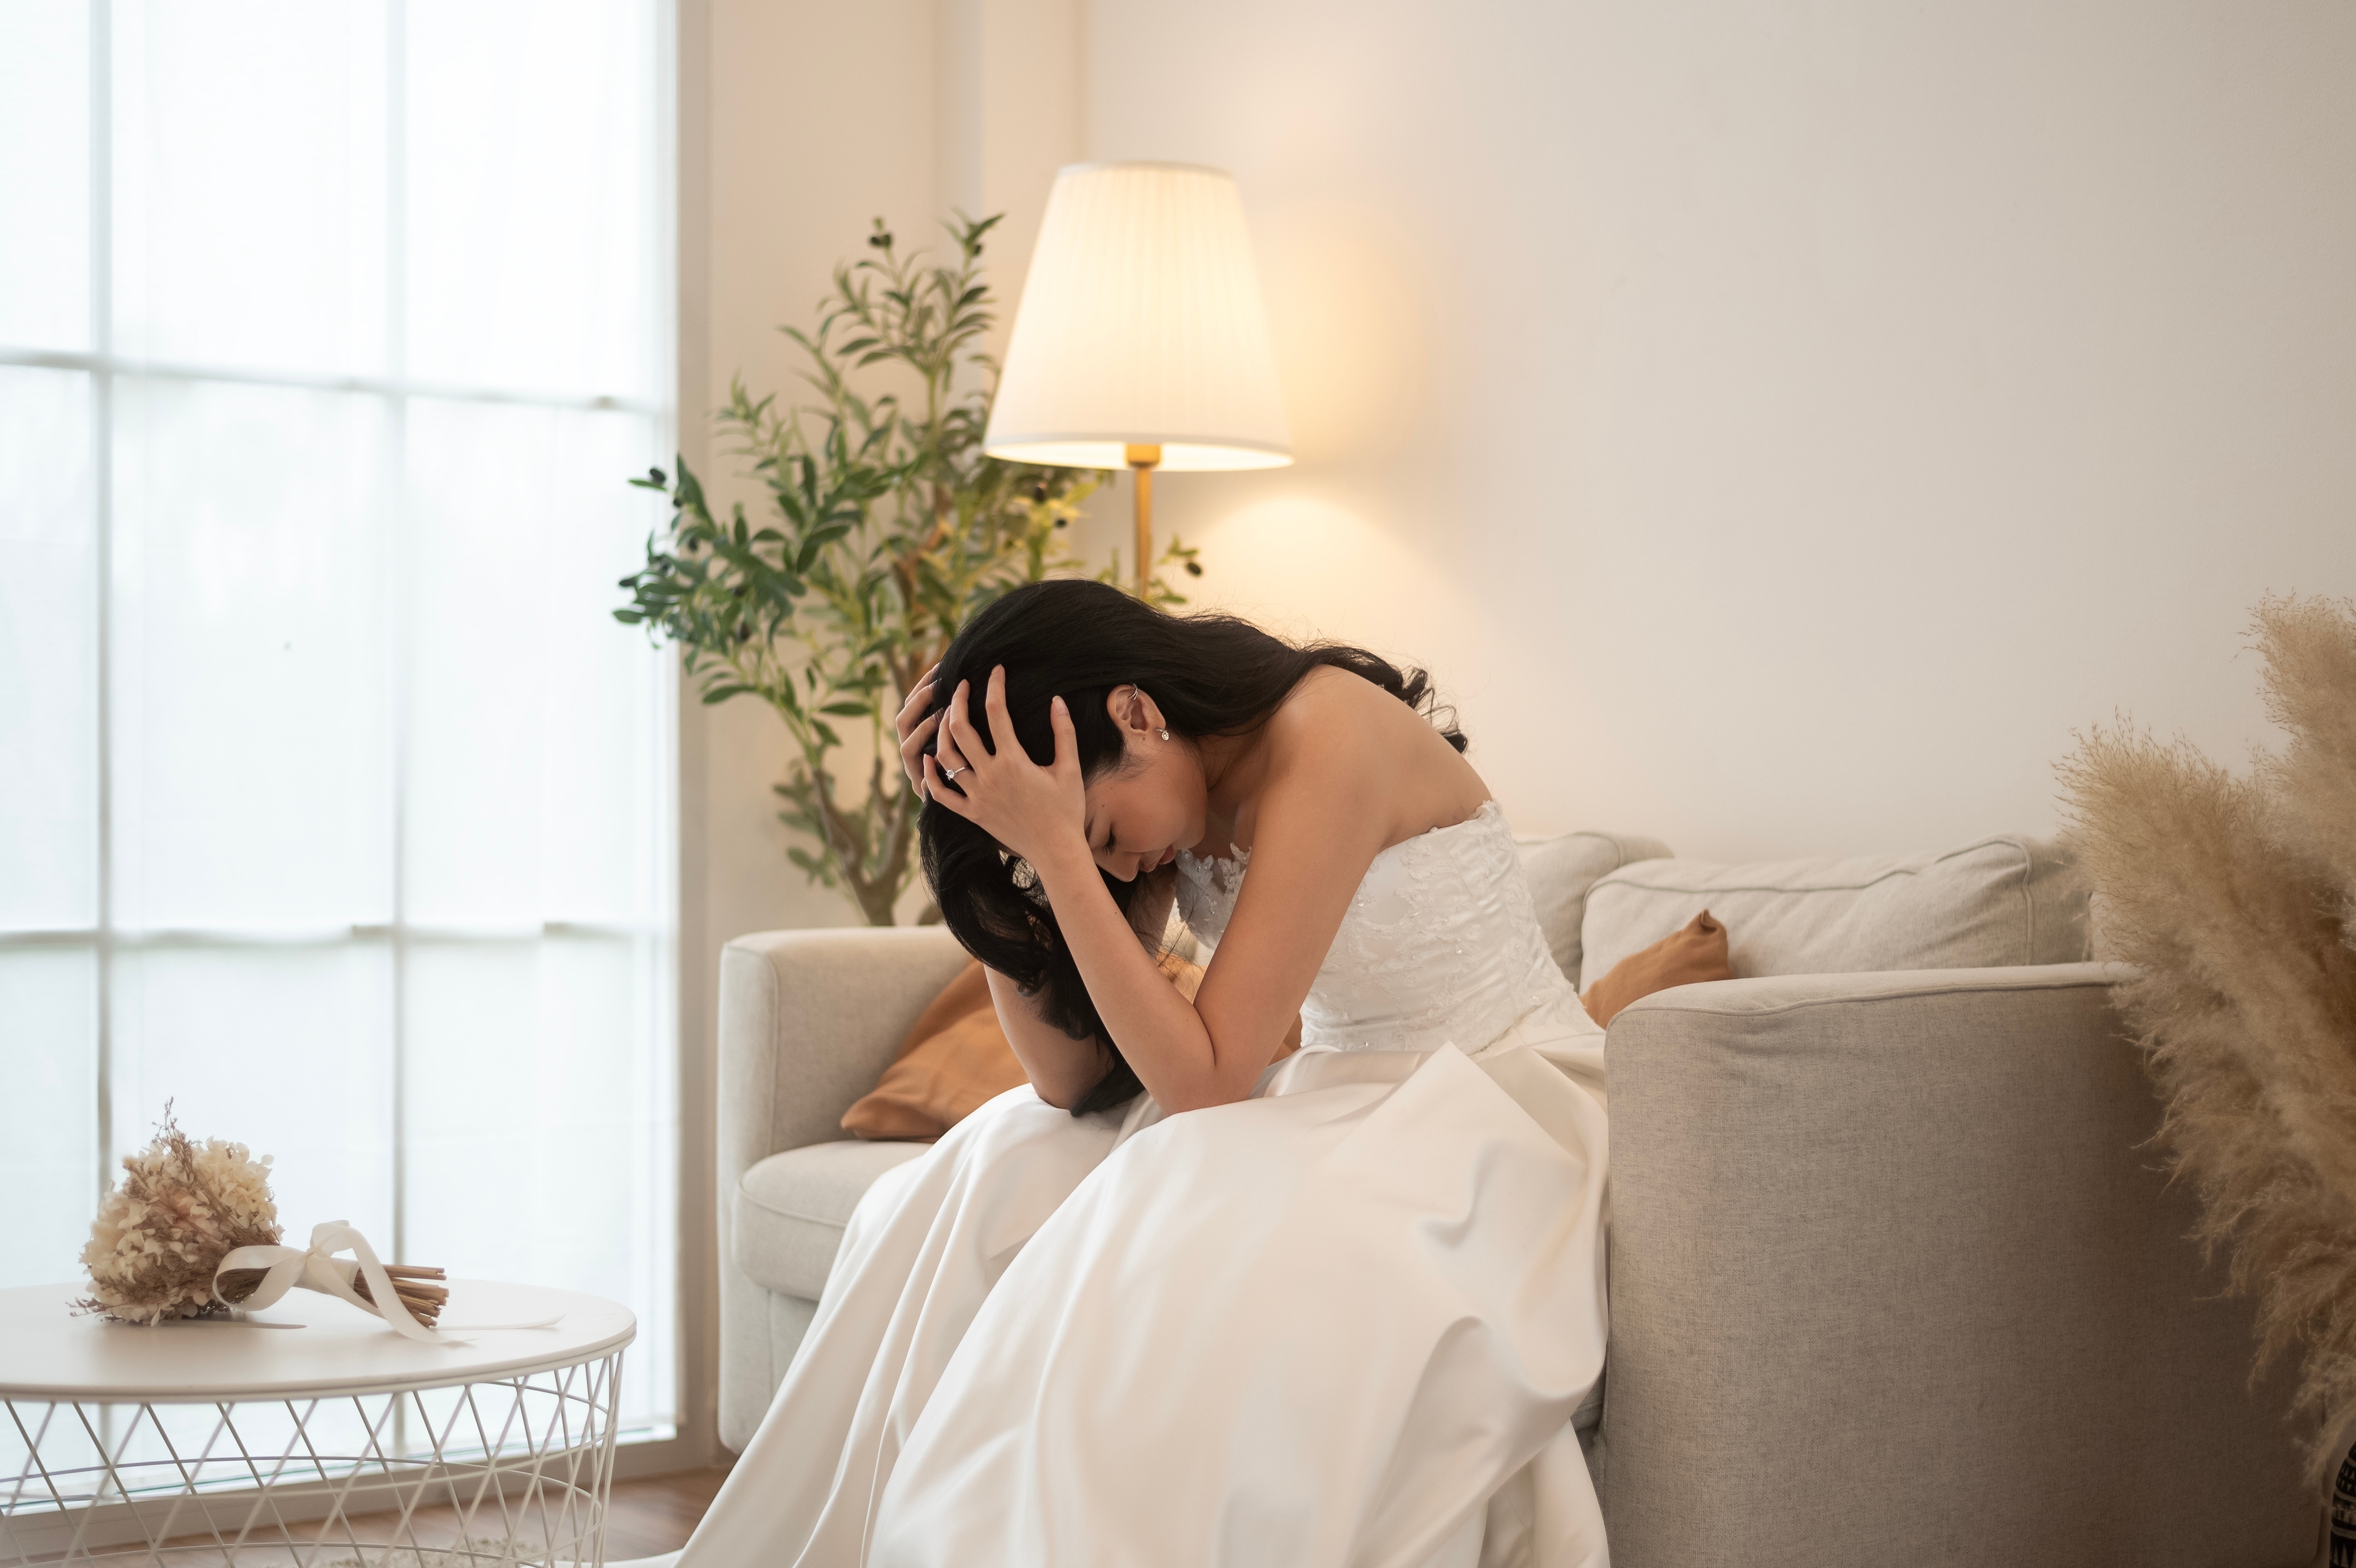 Una novia disgustada sentada en un sofá | Fuente: Shutterstock